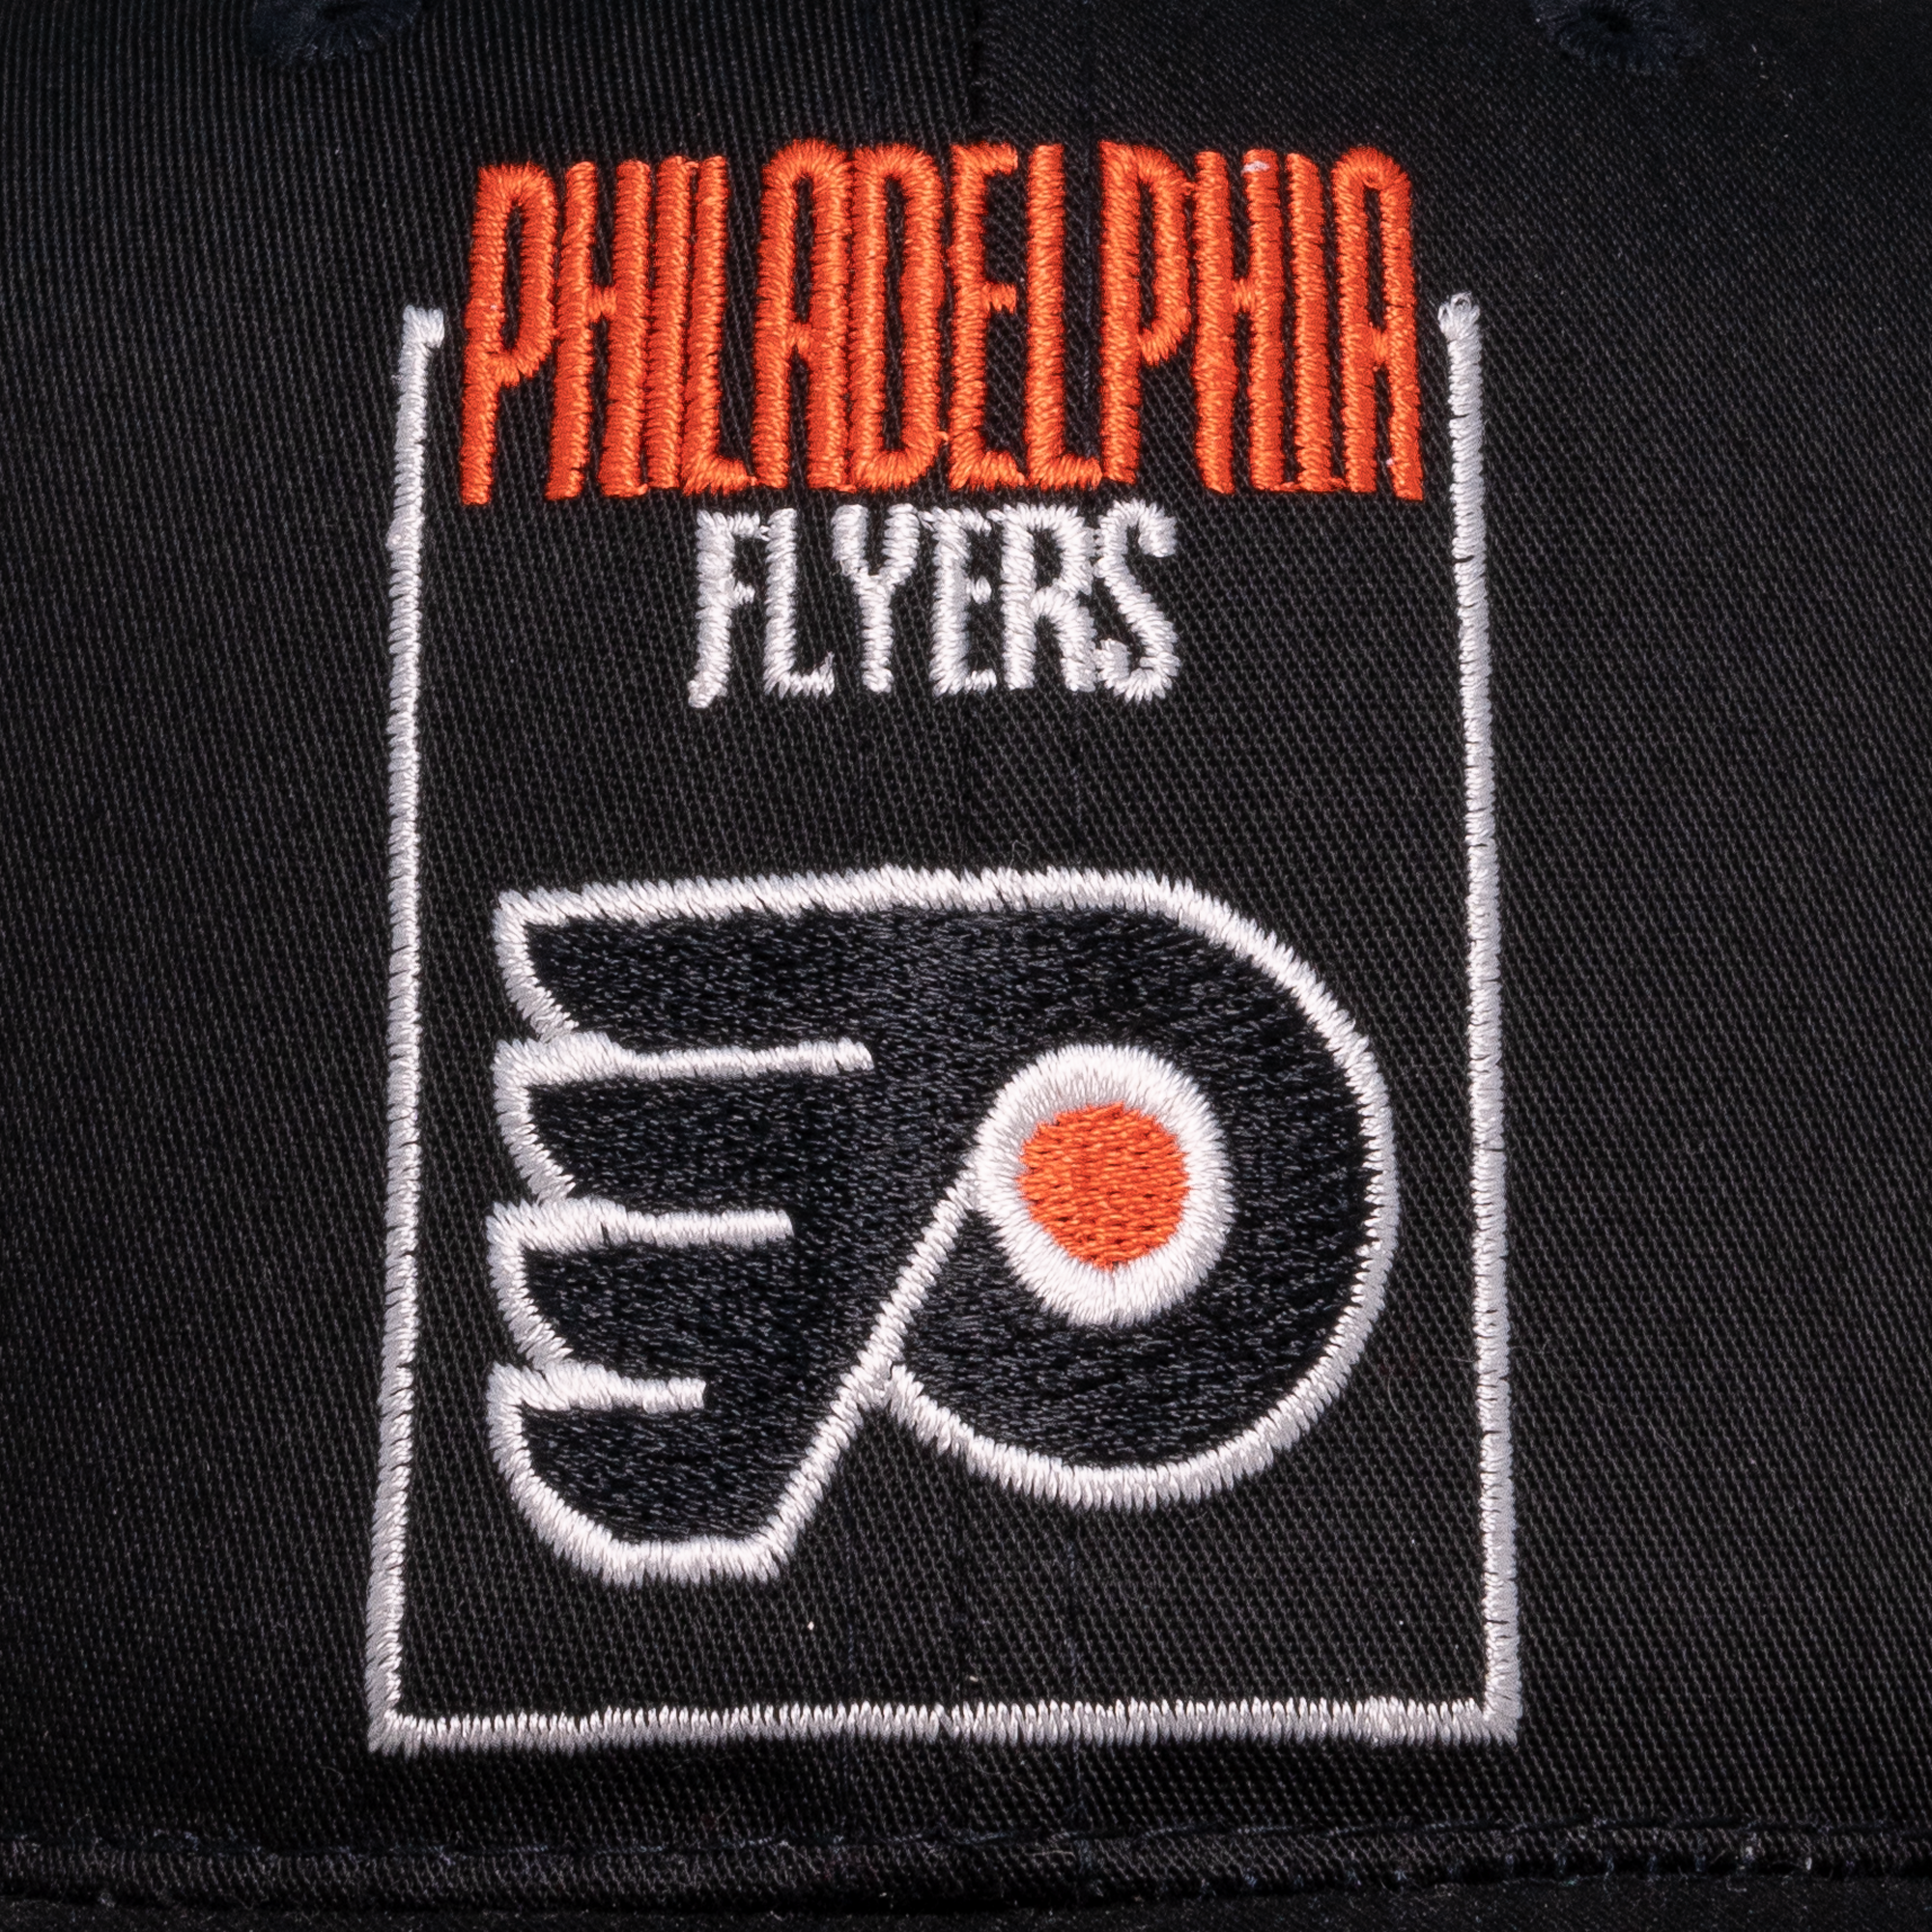 Philadephia Flyers Annco Snapback Black-PLUS